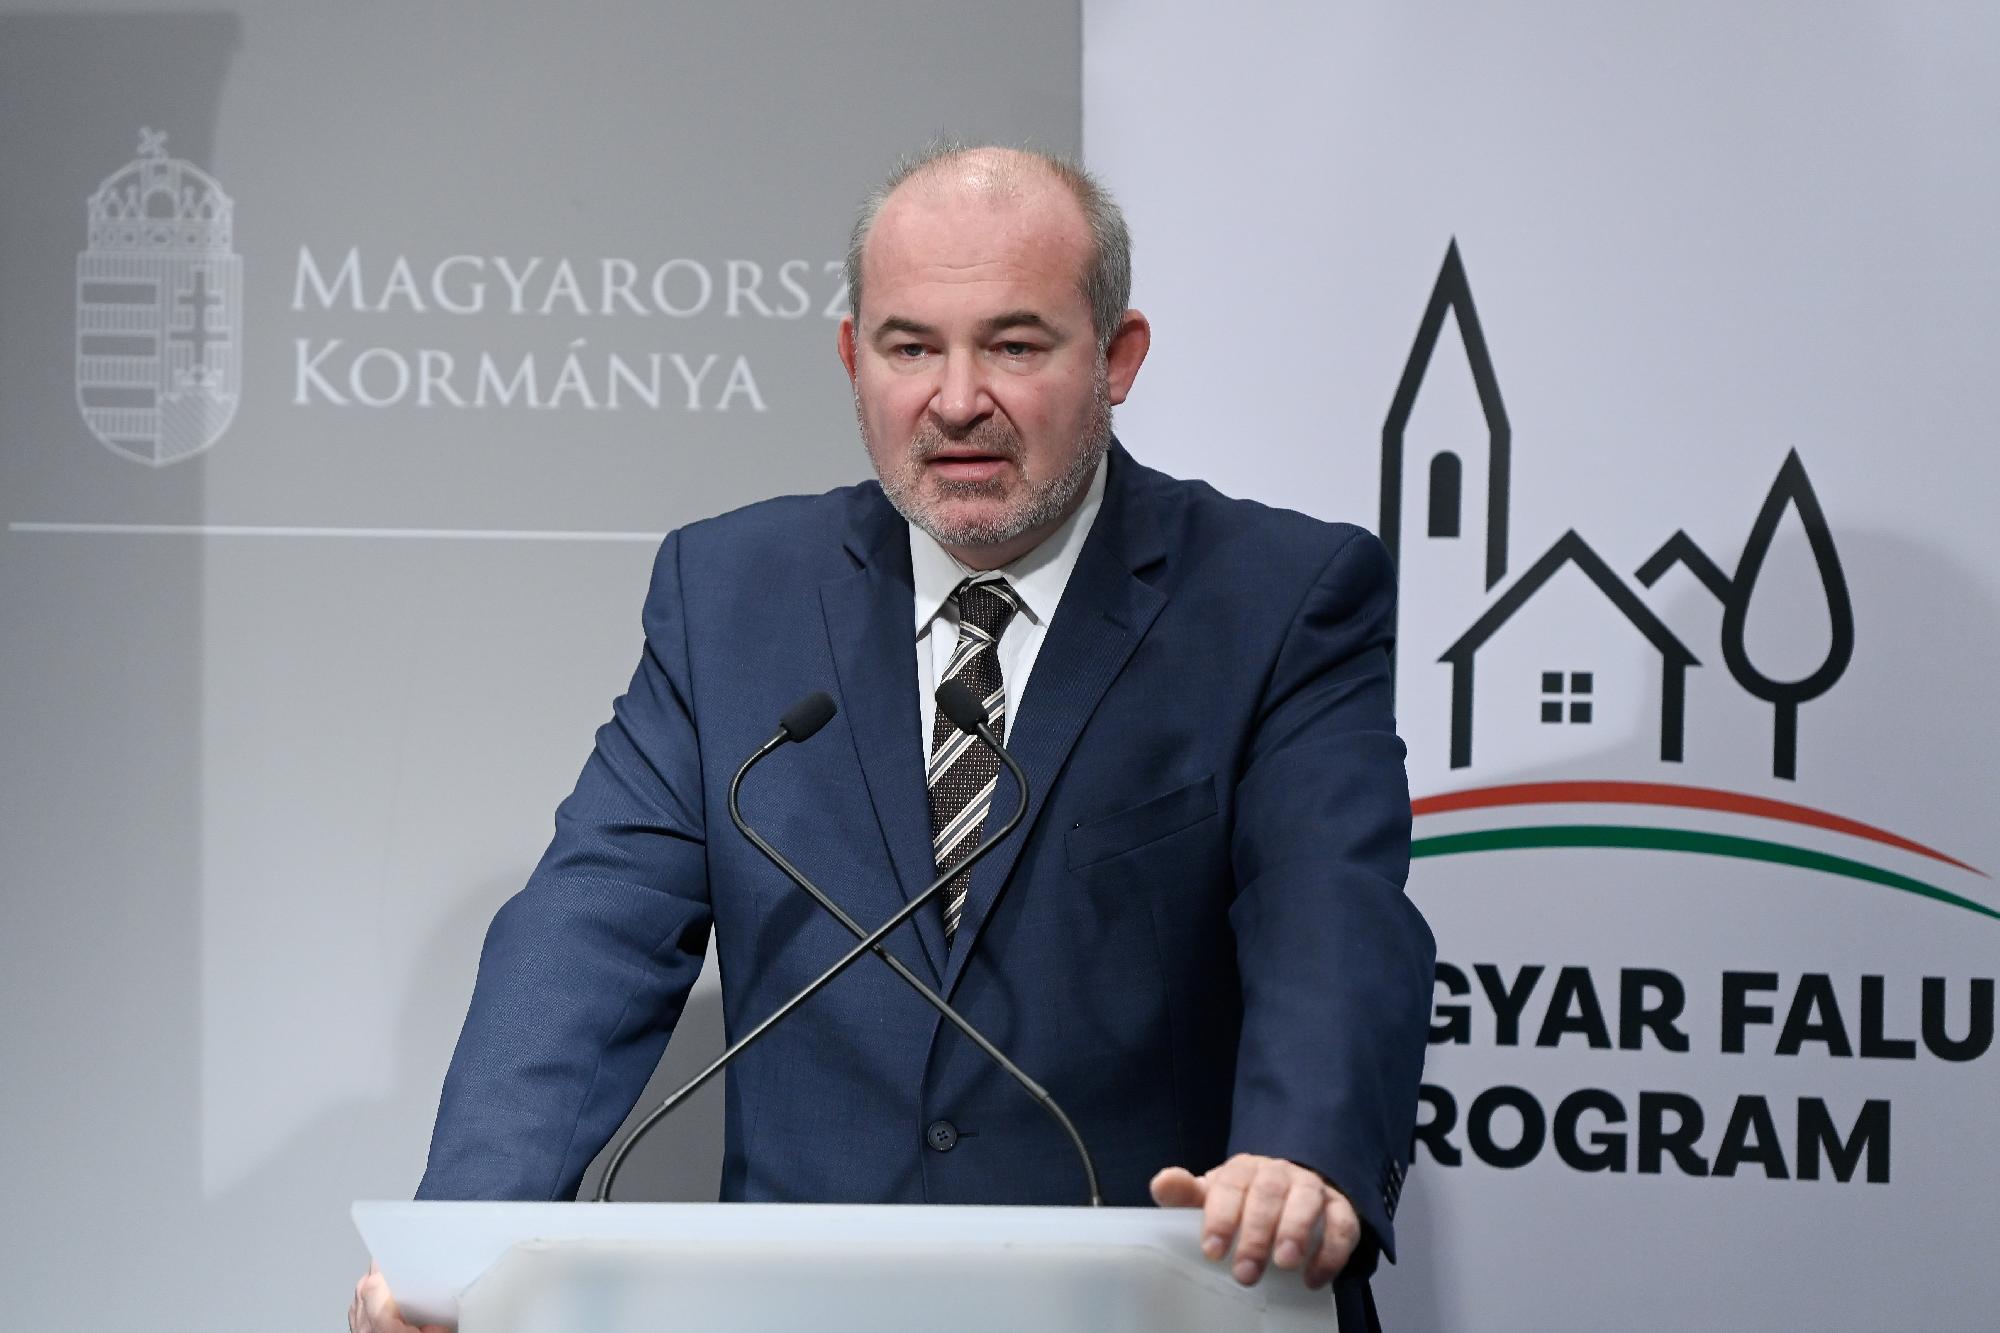 Magyar falu program - Csaknem 1600 civil szervezet nyert forrás